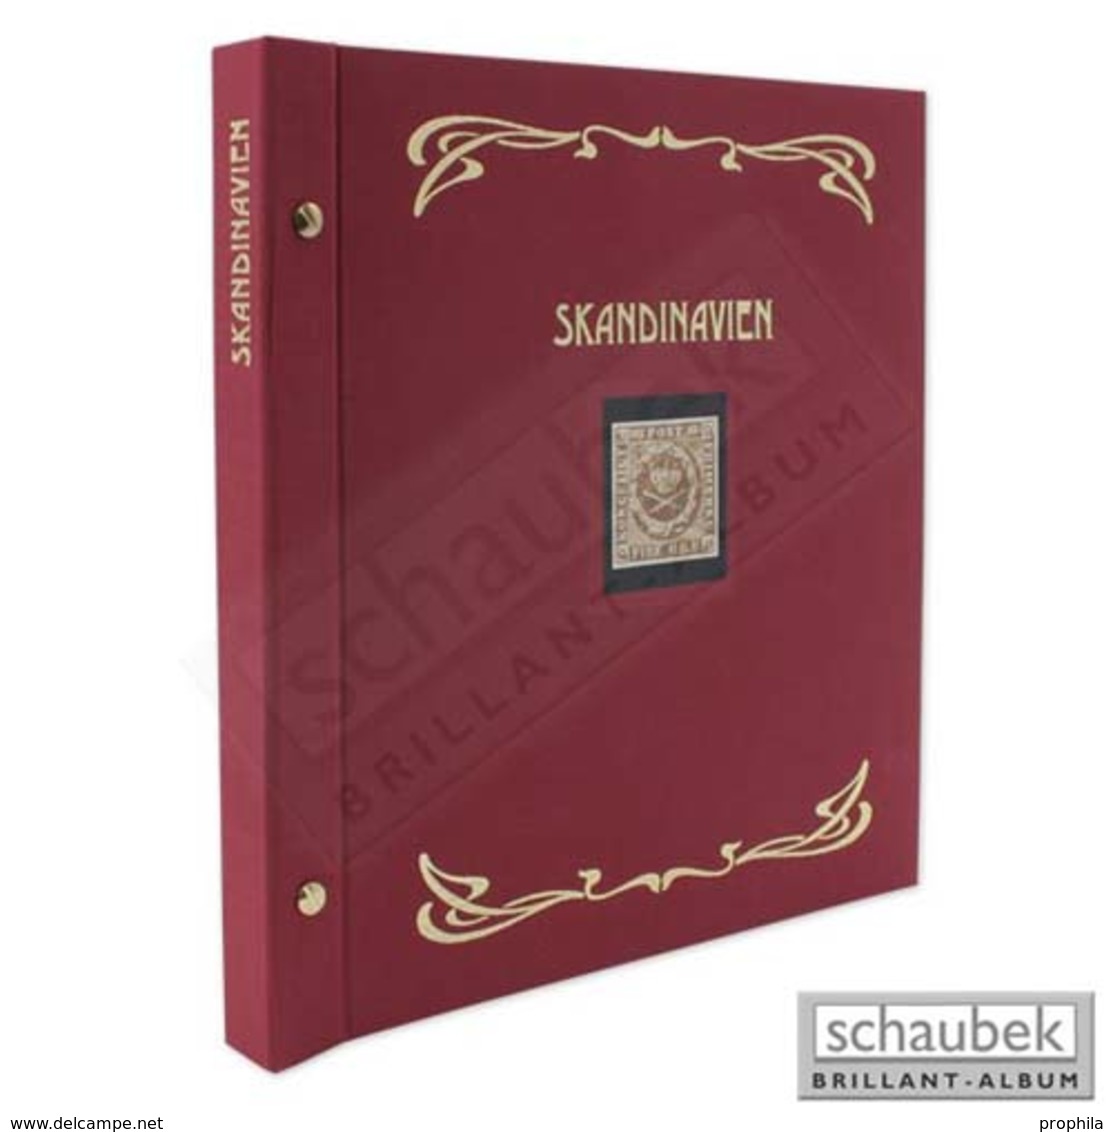 Schaubek Ds0028 Schraubbinder Leinen Schmal Rot, Reprint-Ausführung Skandinavien - Groß, Grund Schwarz